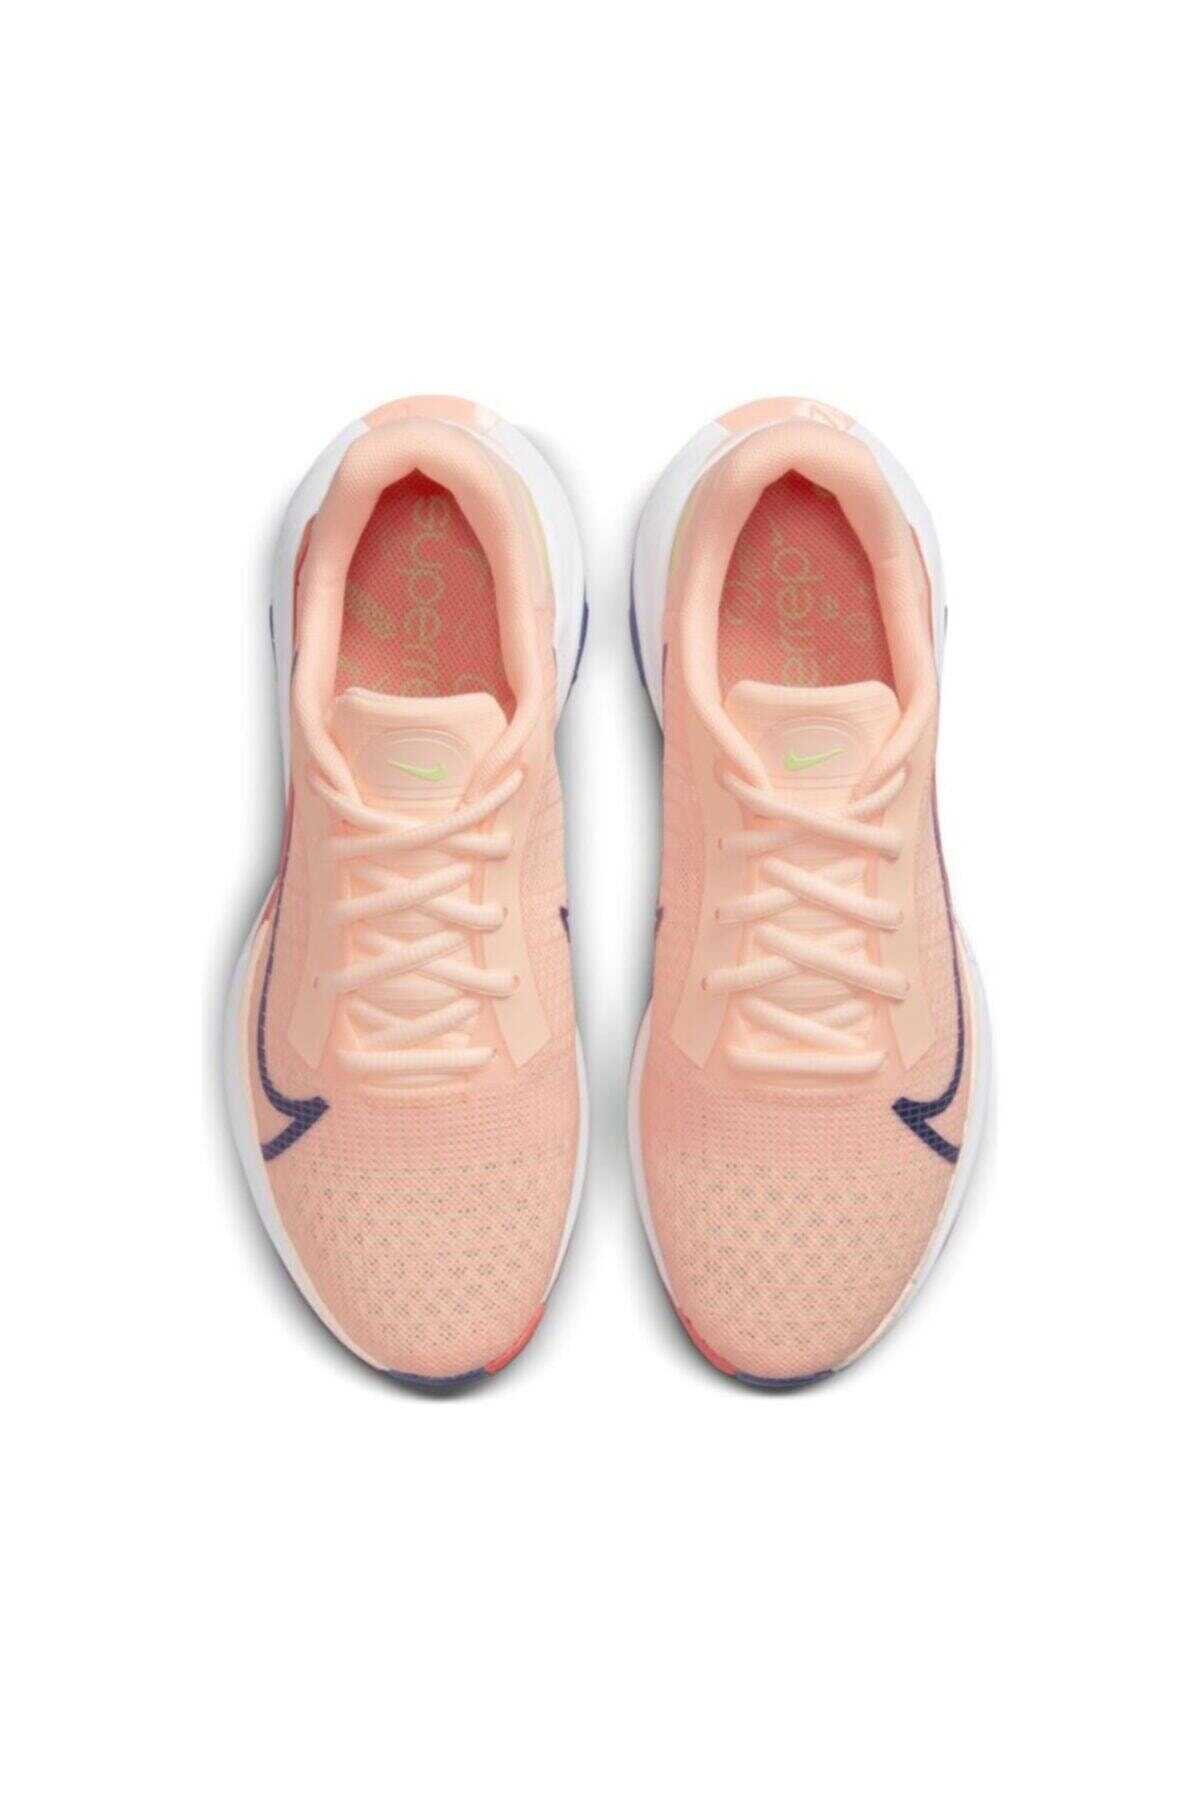 کفش ورزشی زنانه صورتی برند Nike 